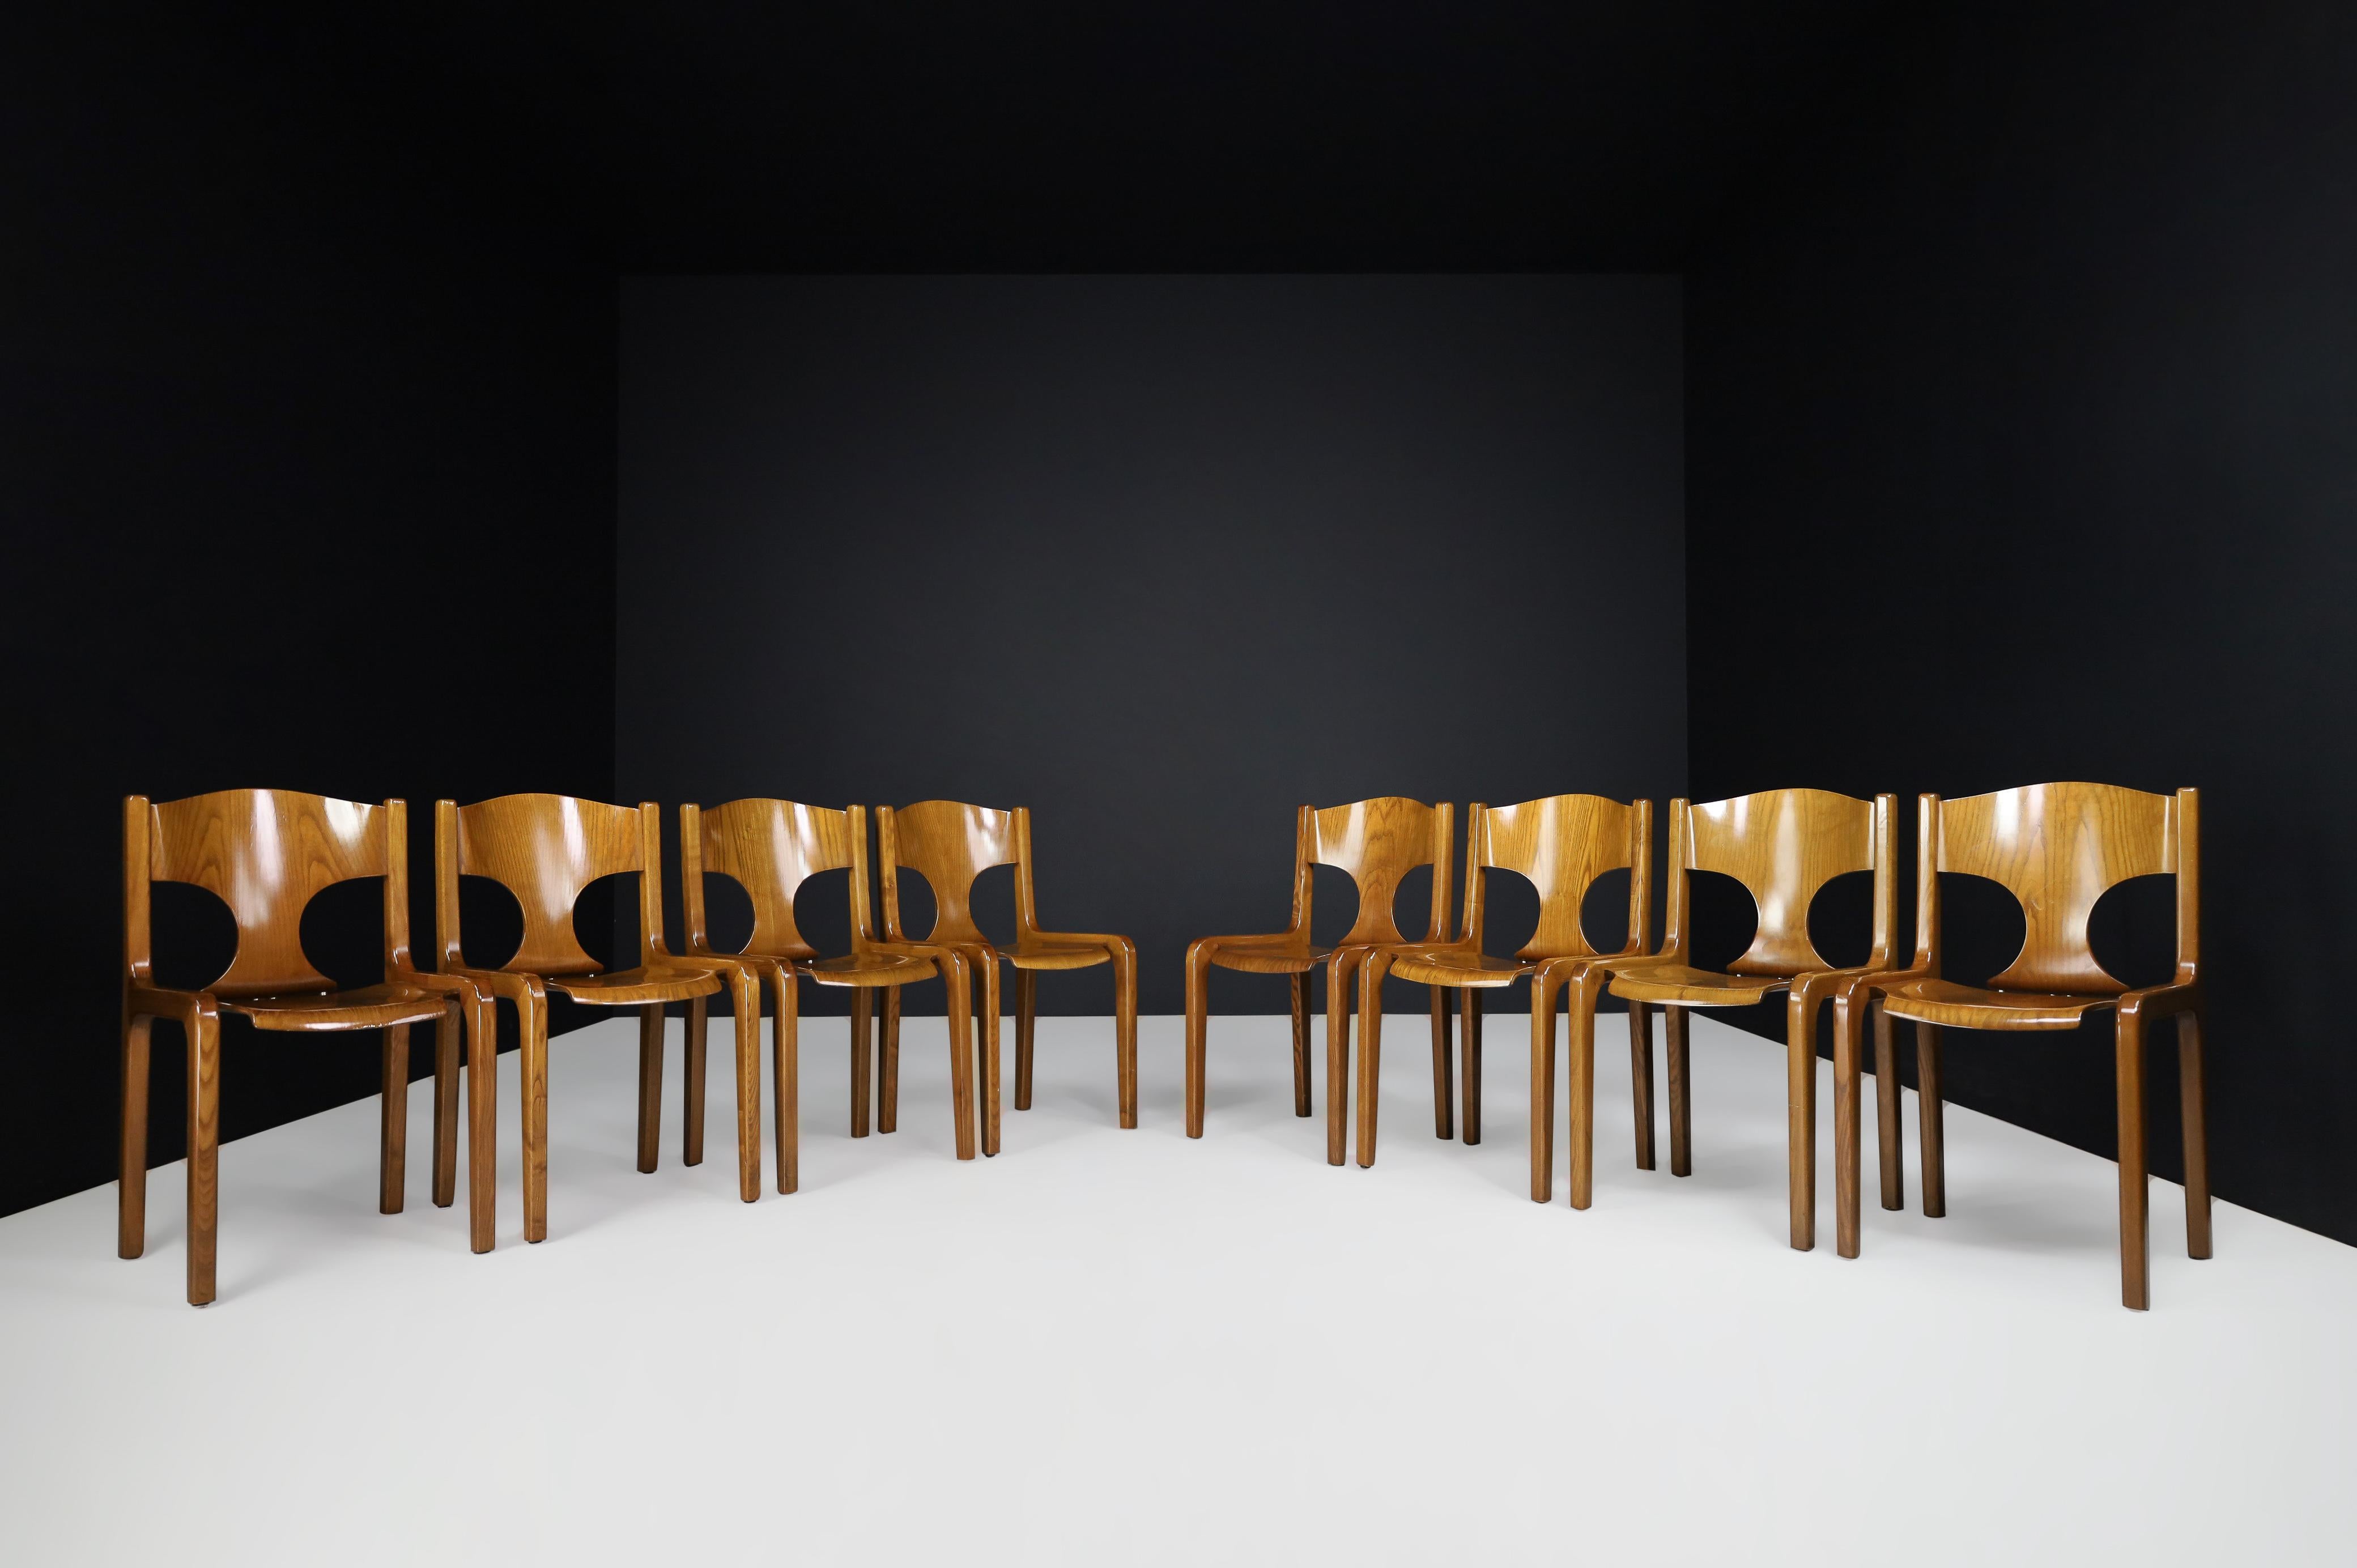 Augusto Savini für Pozzi Esszimmerstühle, Italien 1968.

Ein prächtiges Set hochwertiger Esszimmerstühle, das der Architekt Augusto Savini Ende der 1960er Jahre für die Manufaktur Pozzi entwarf, wurde 1968 in Pozzis Gallerie Lafayette erstmals